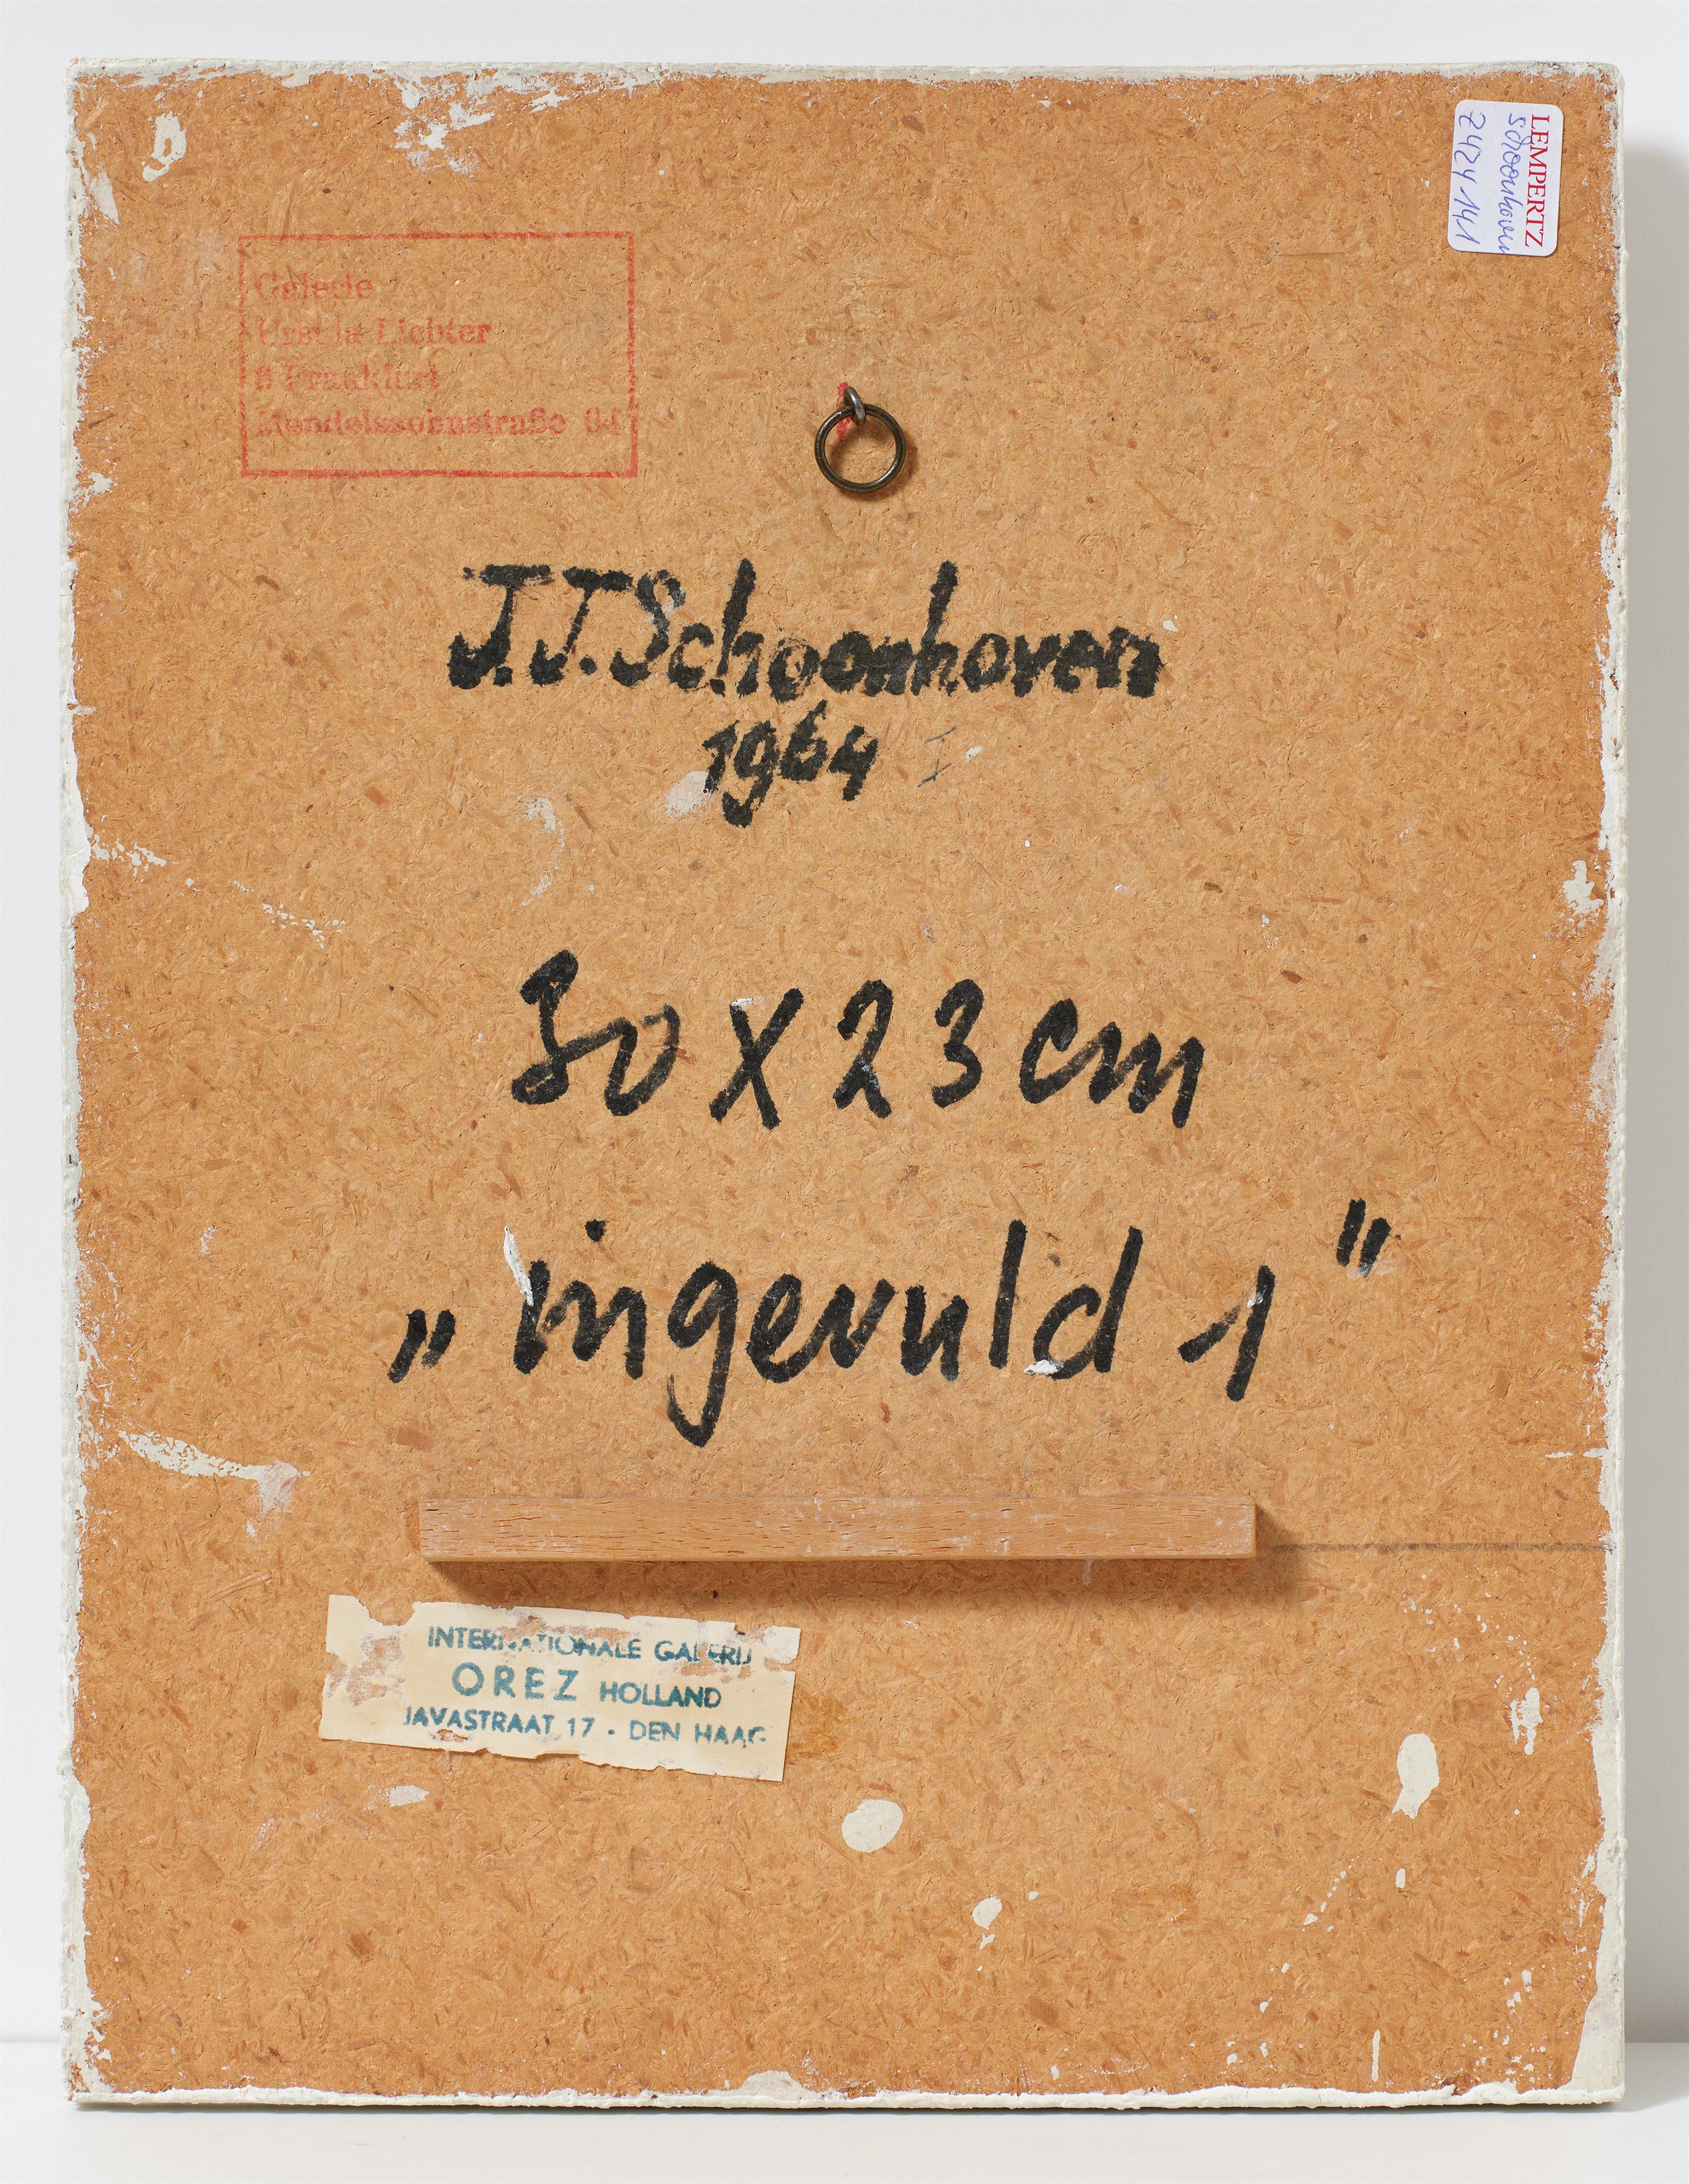 Jan J. Schoonhoven - Ingevuld 1 - image-2